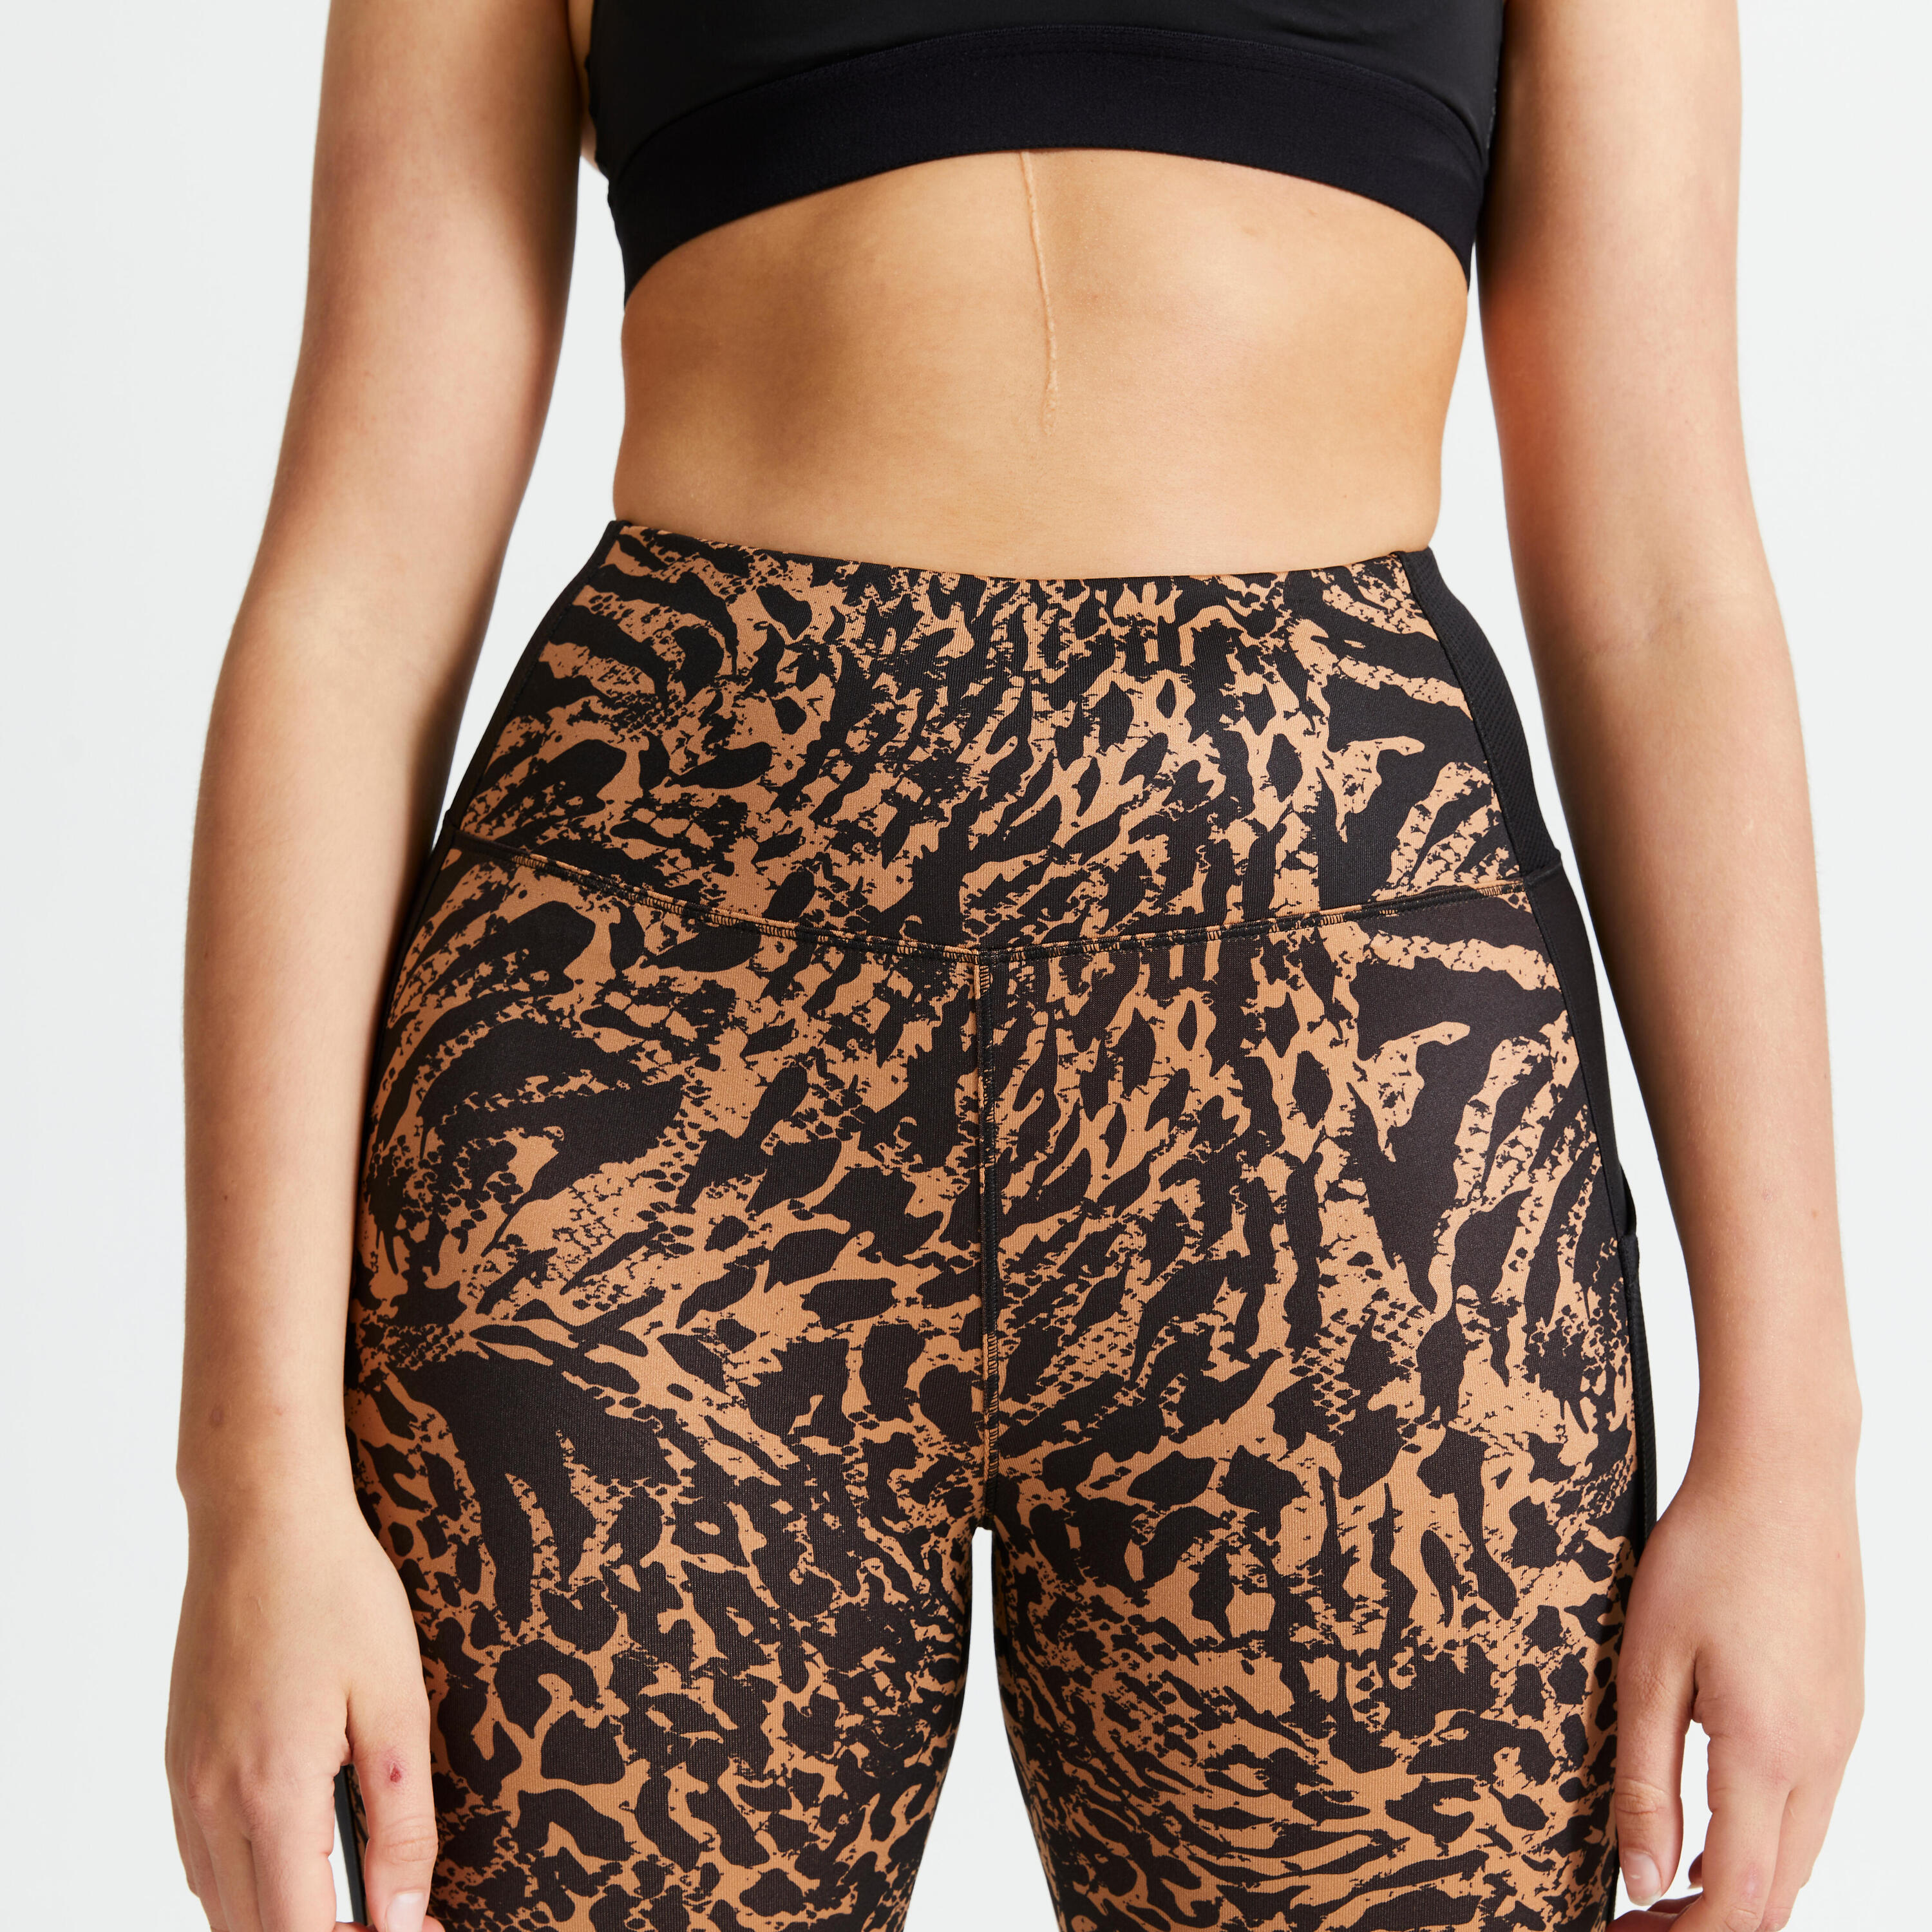 Women's phone pocket fitness high-waisted leggings, leopard print 3/5